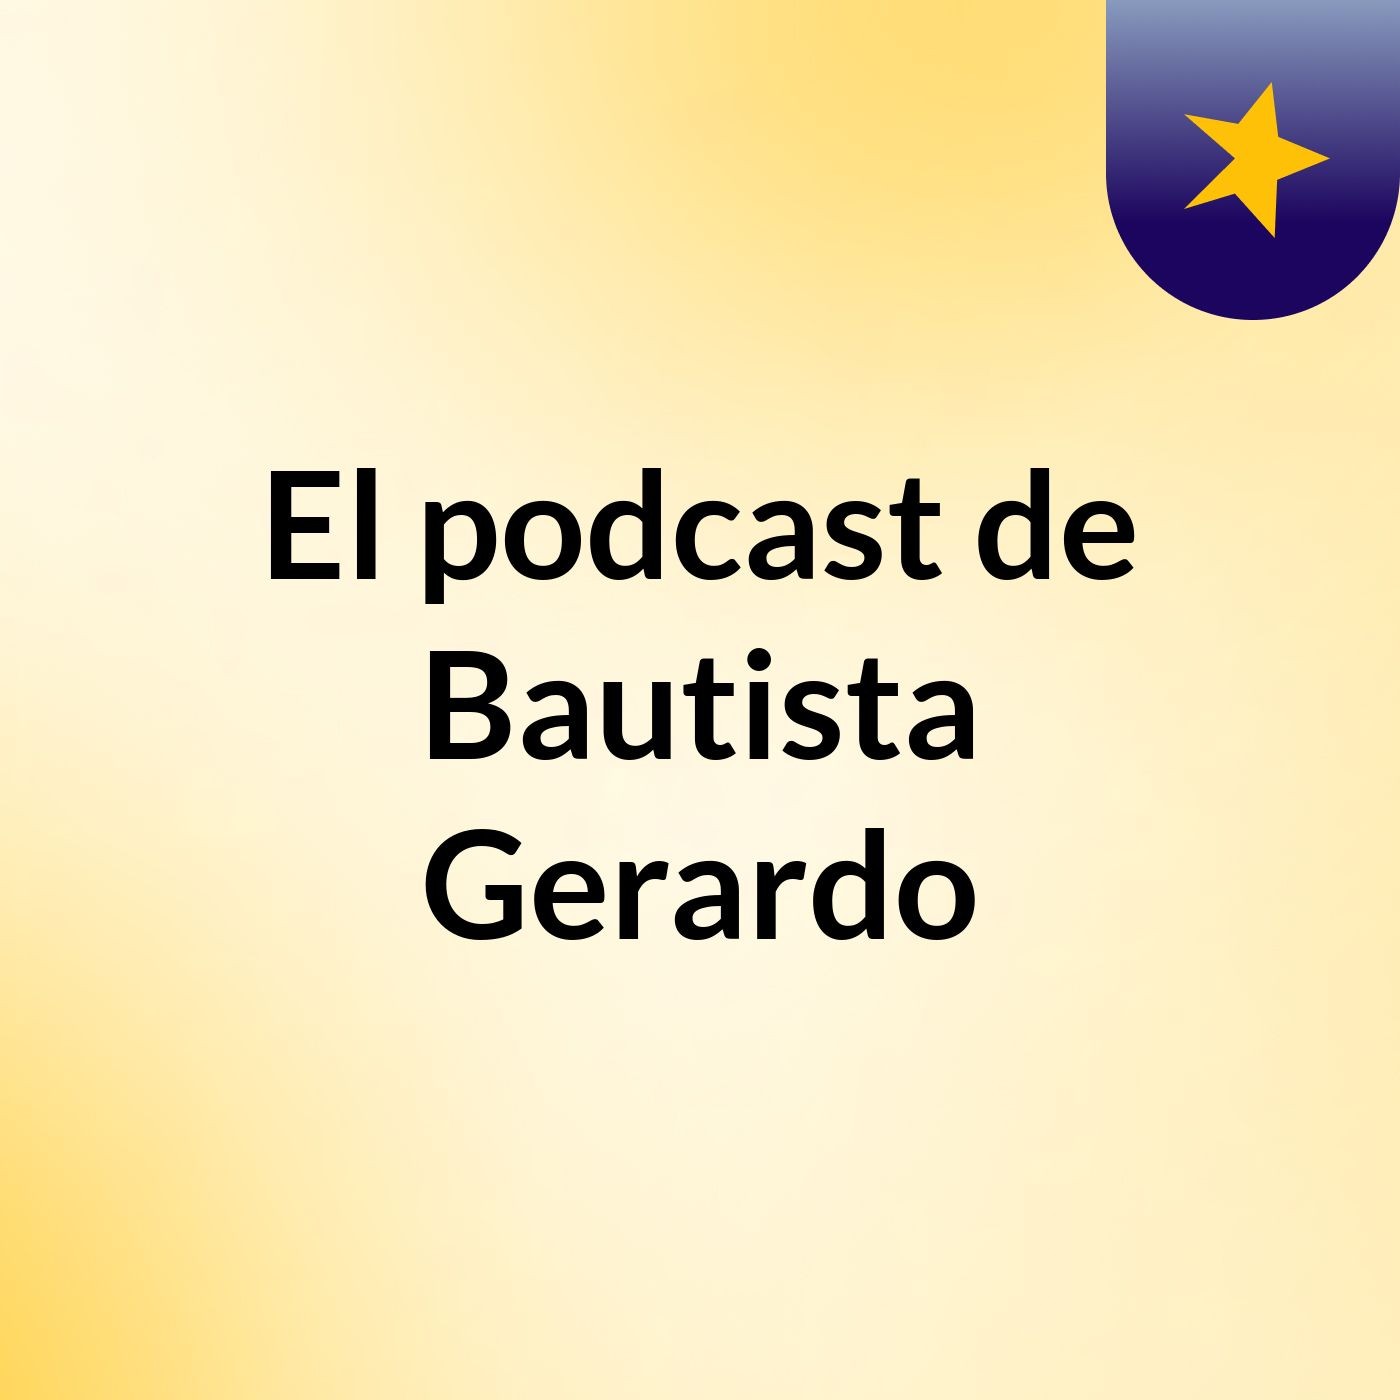 El podcast de Bautista Gerardo